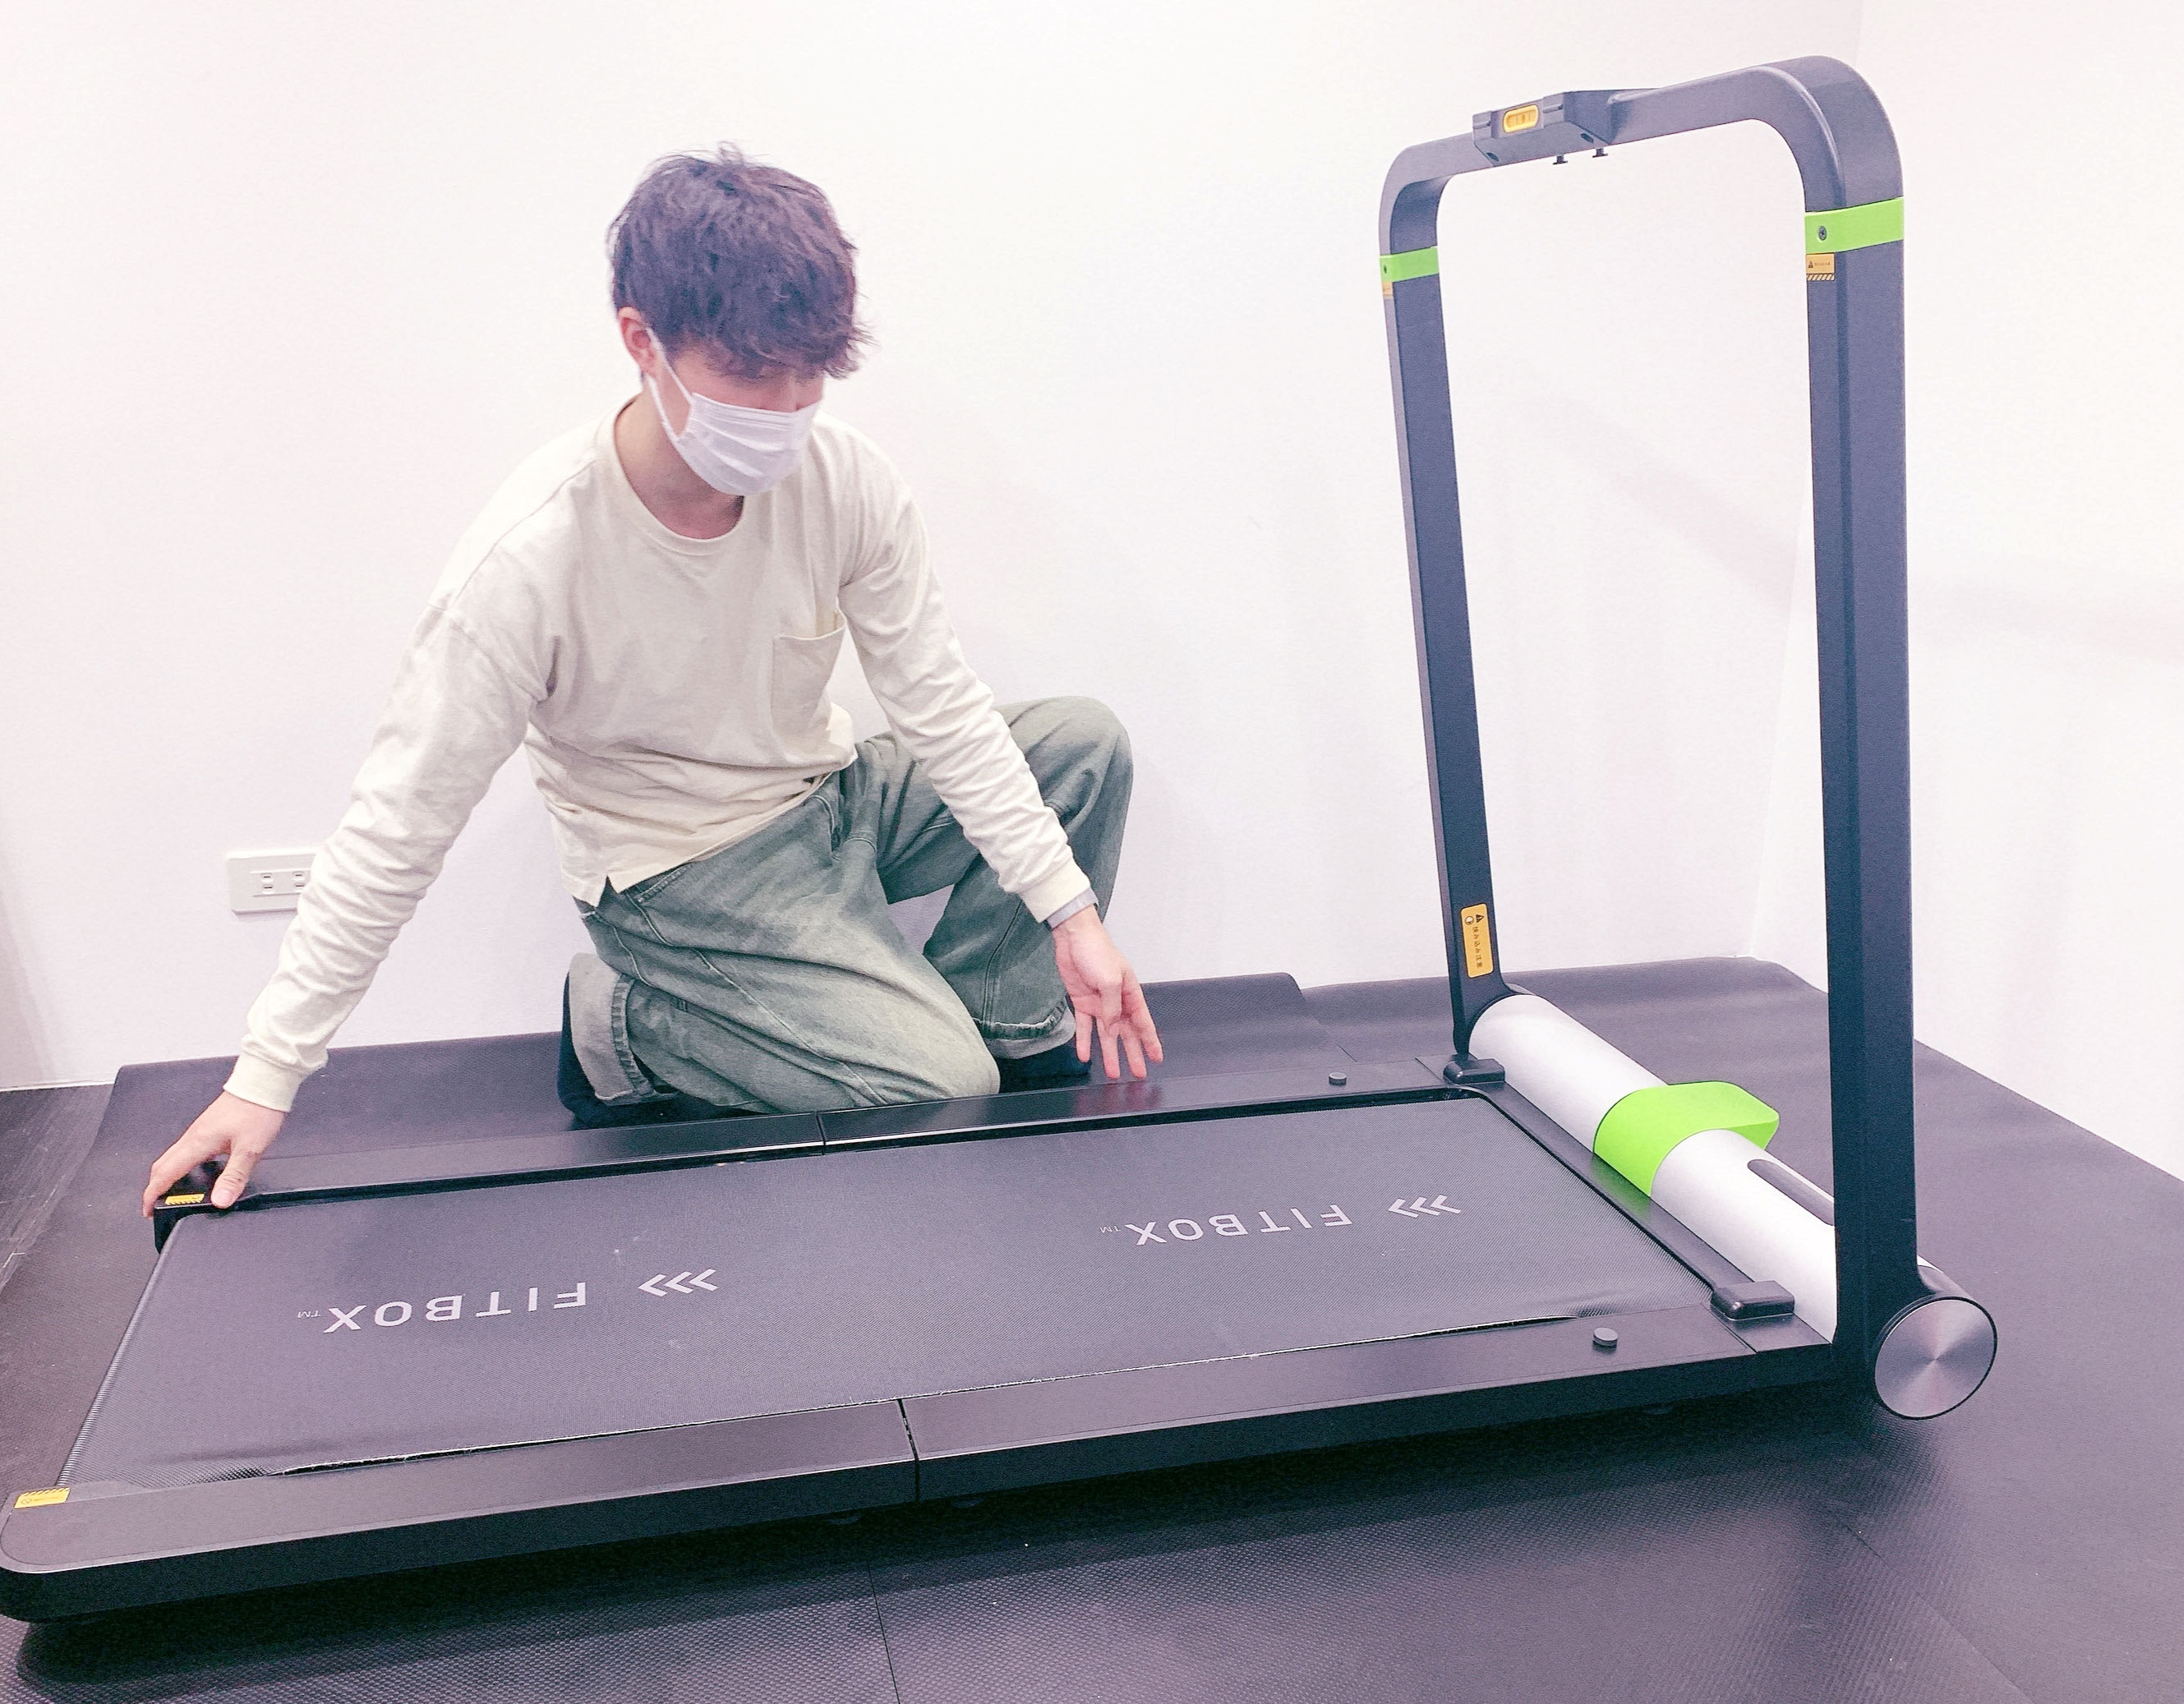 FITBOX ARCUT Treadmill 折りたたみ式 ランニングマシン - エクササイズ